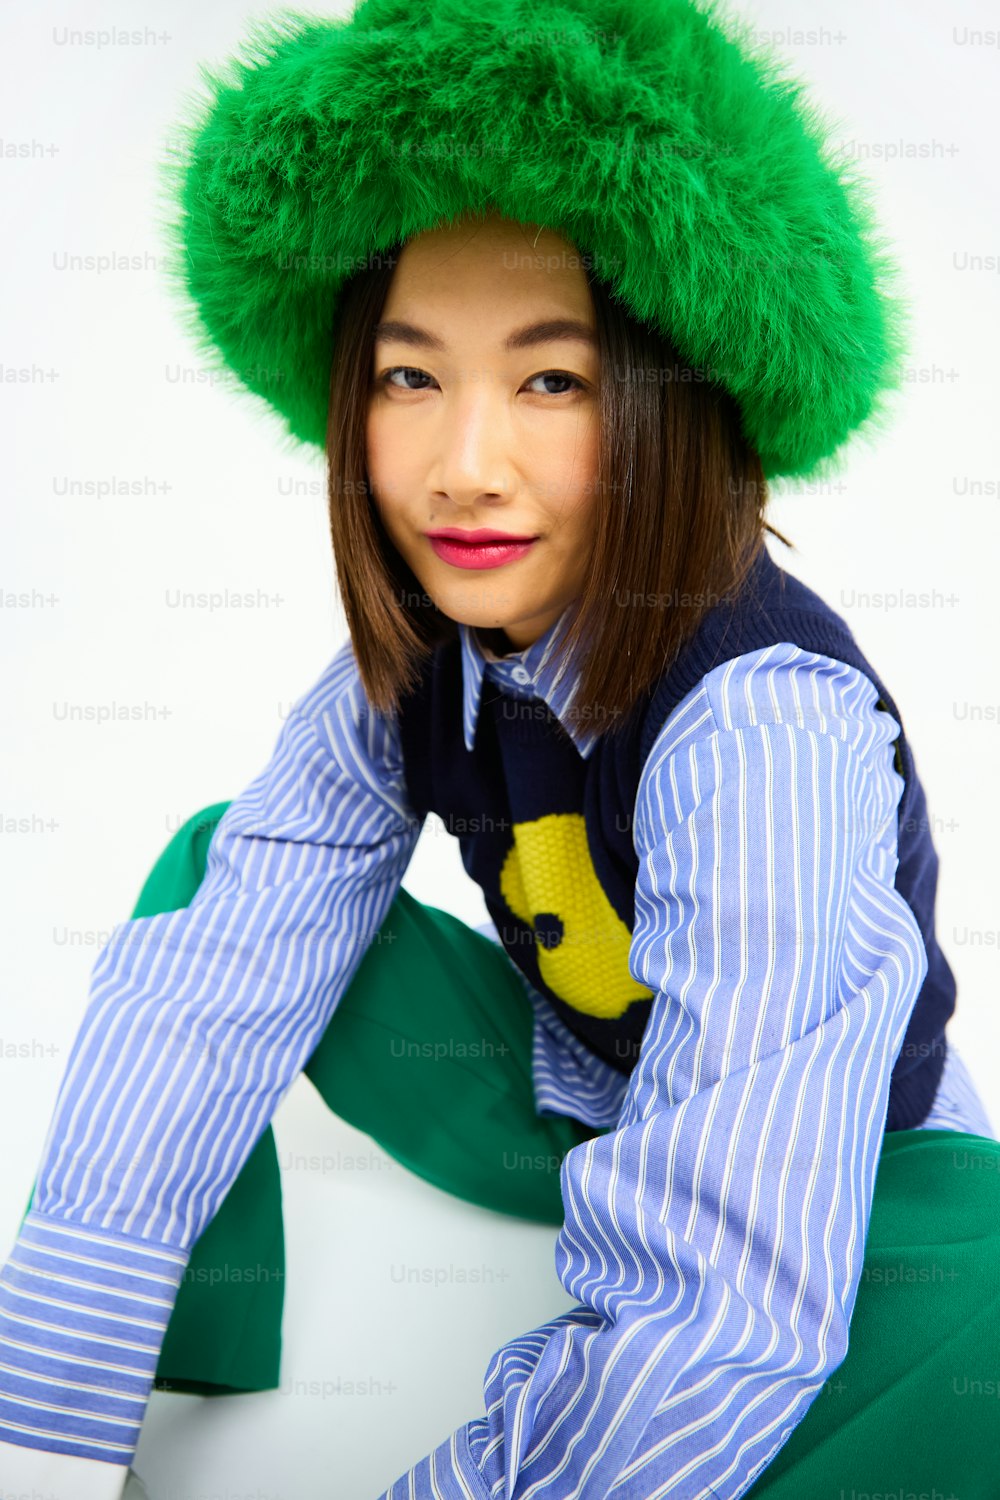 una mujer con sombrero verde y camisa a rayas